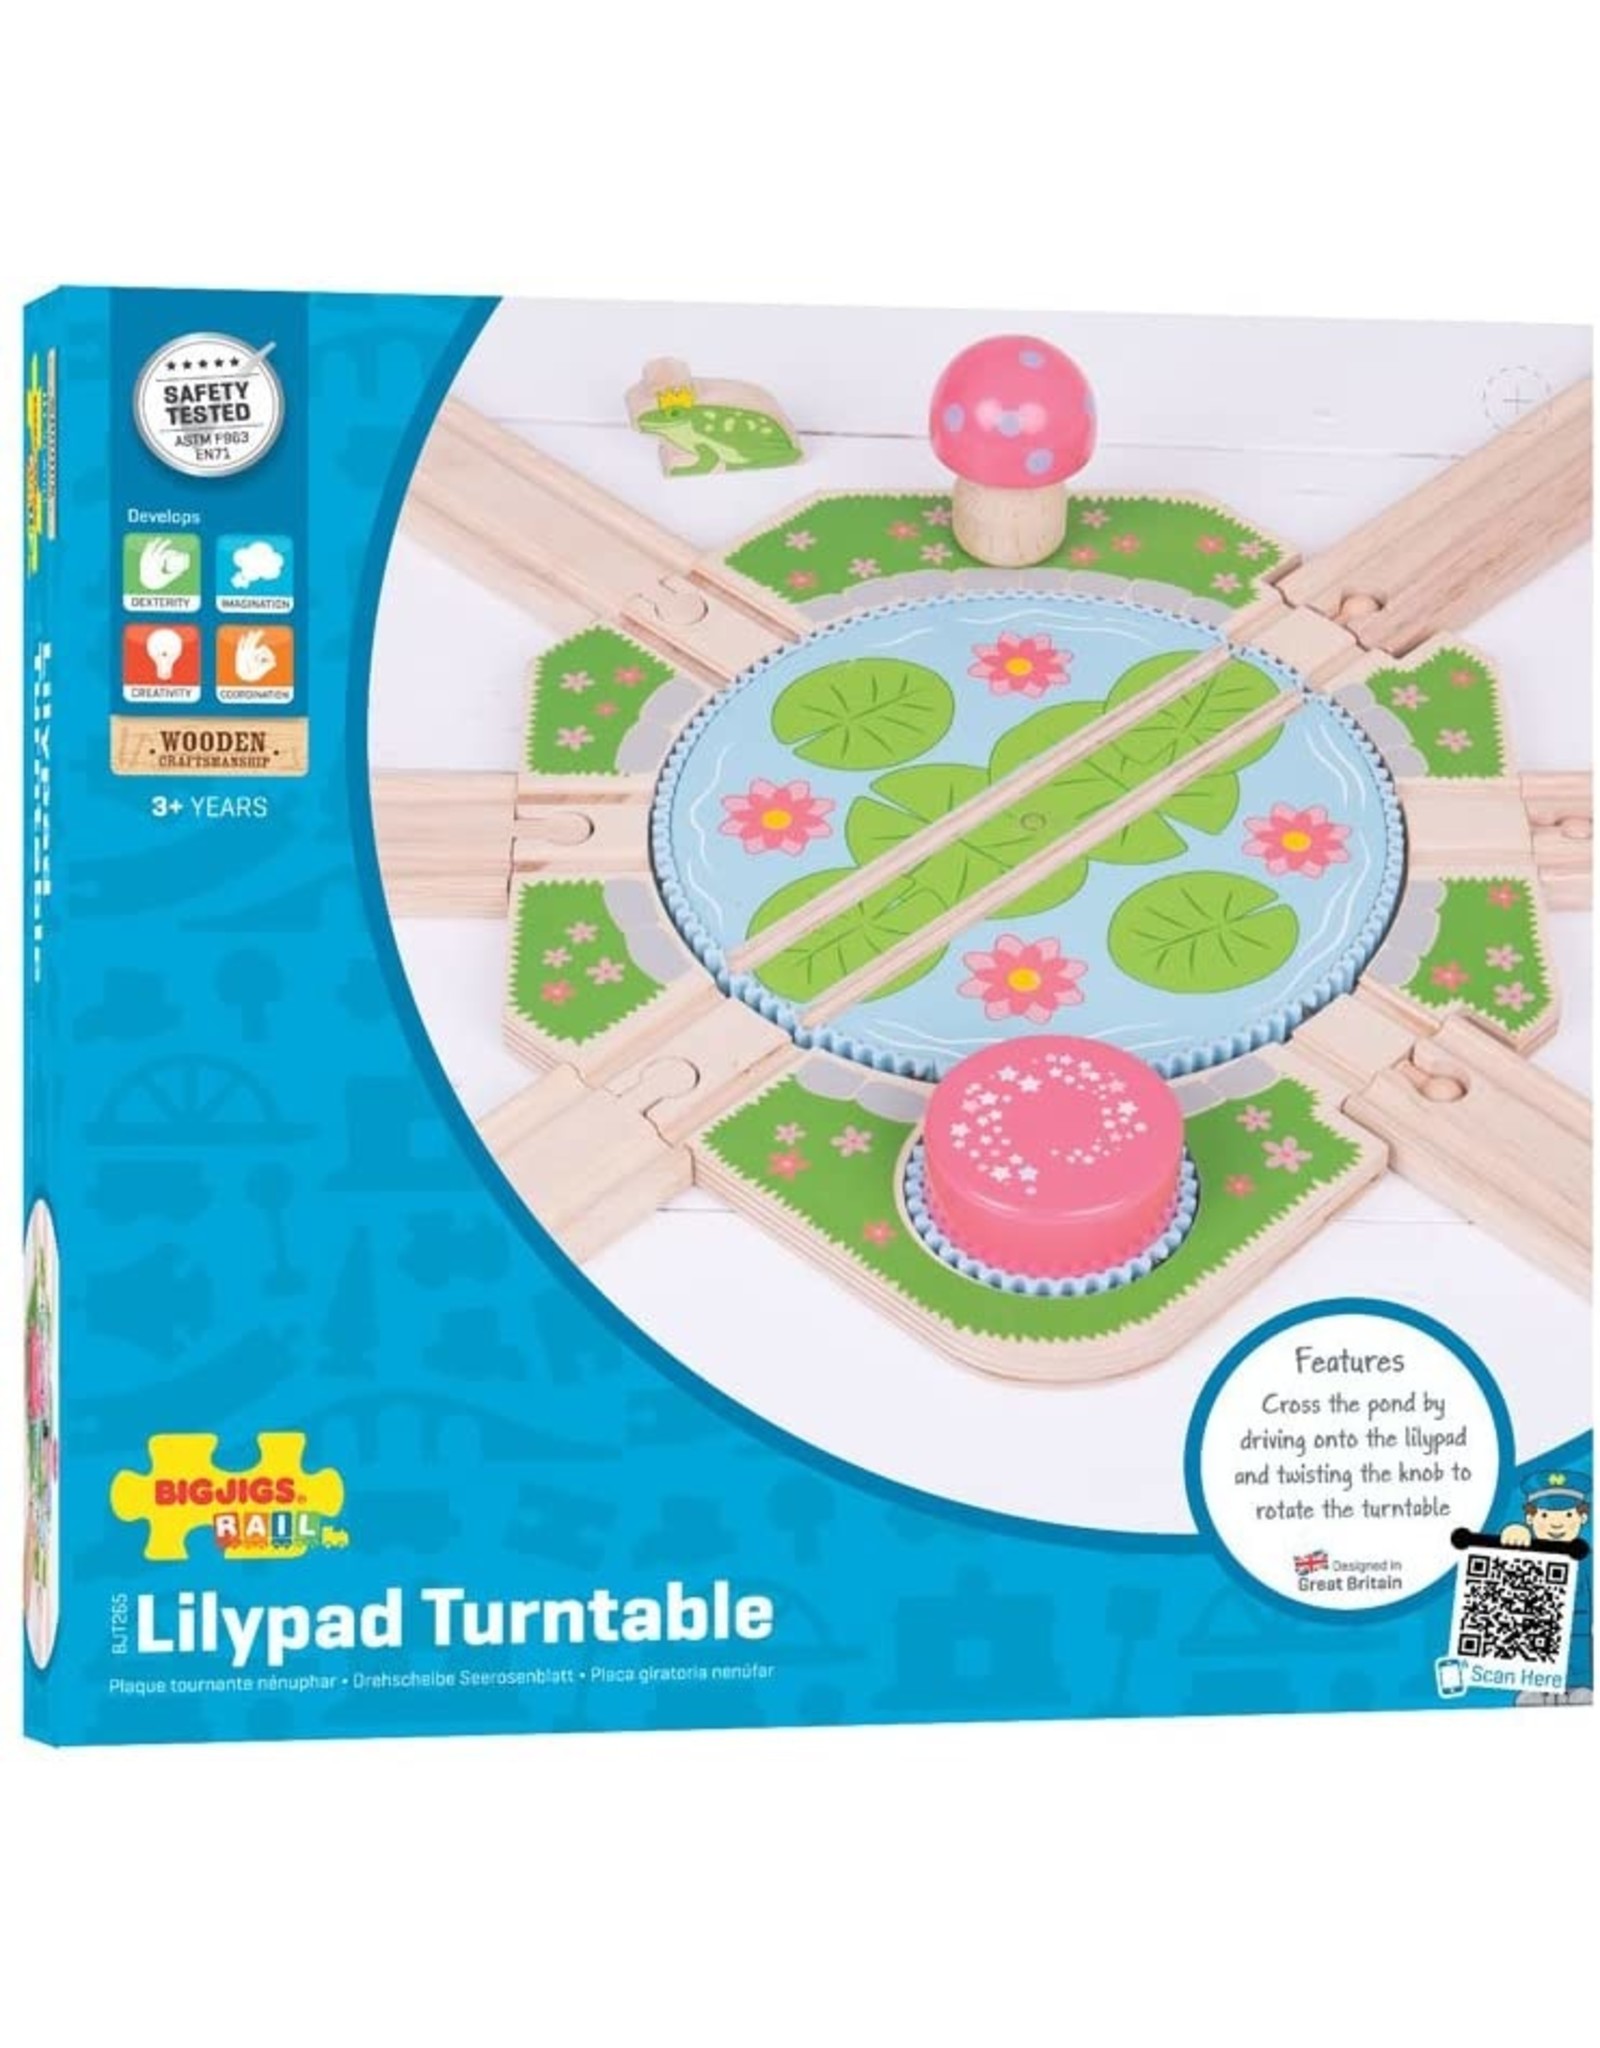 Lilypad Turntable